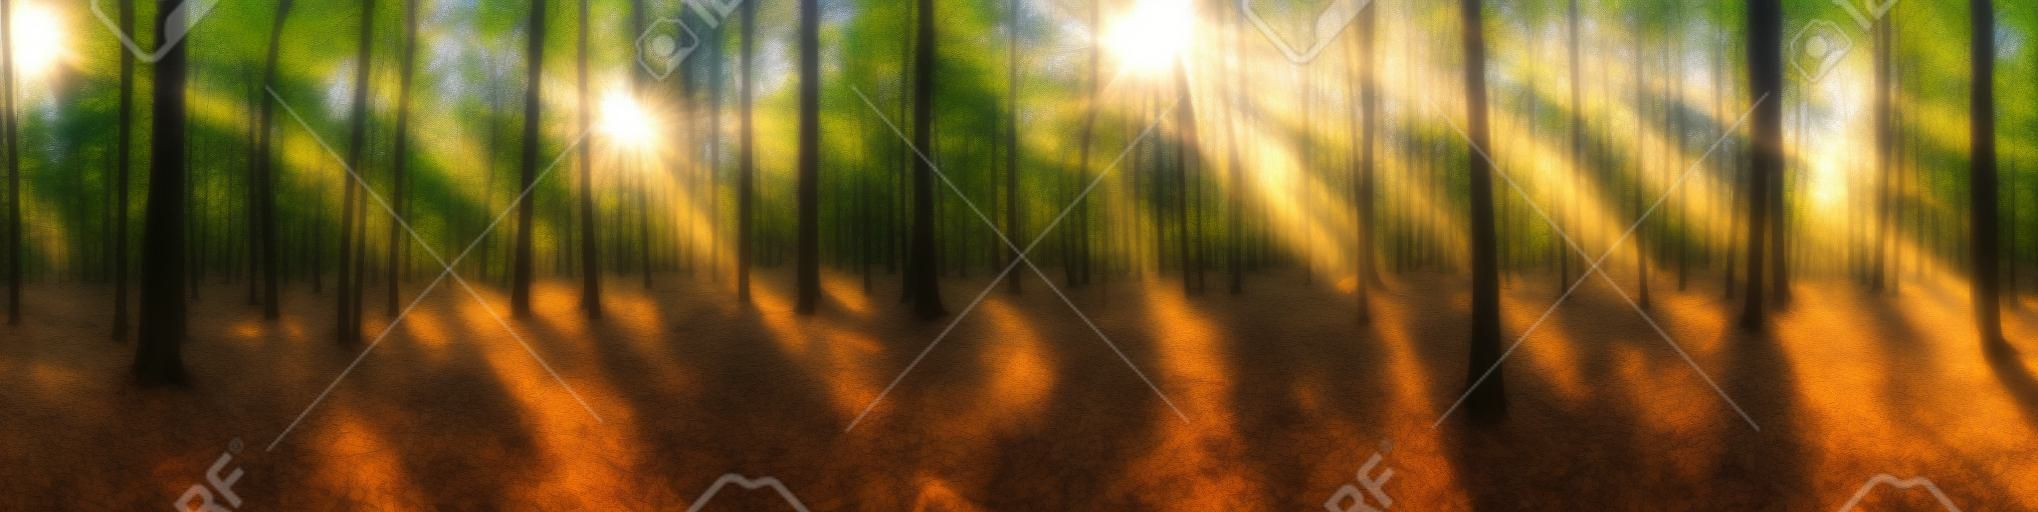 밝은 태양이 나무를 통해 빛나는 아름다운 숲 파노라마